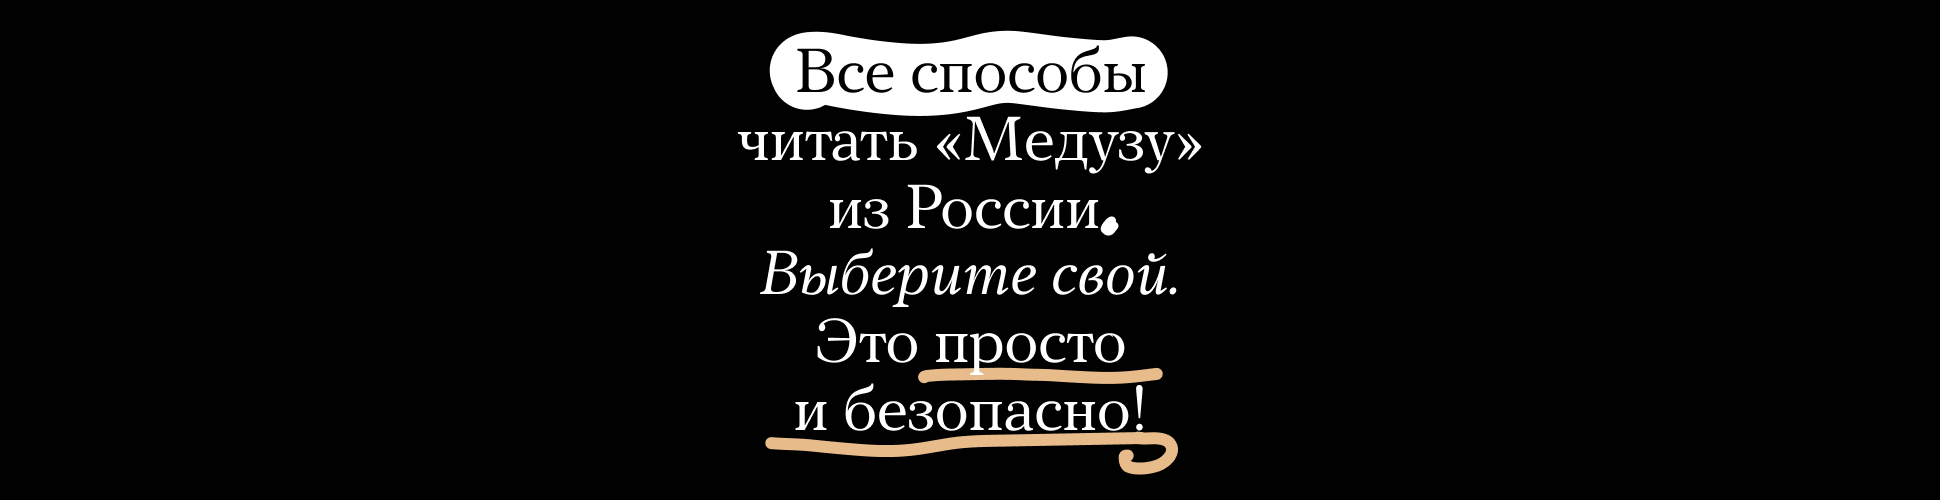 Все способы читать «Медузу» из России. Выберите свой. Это просто и безопасно